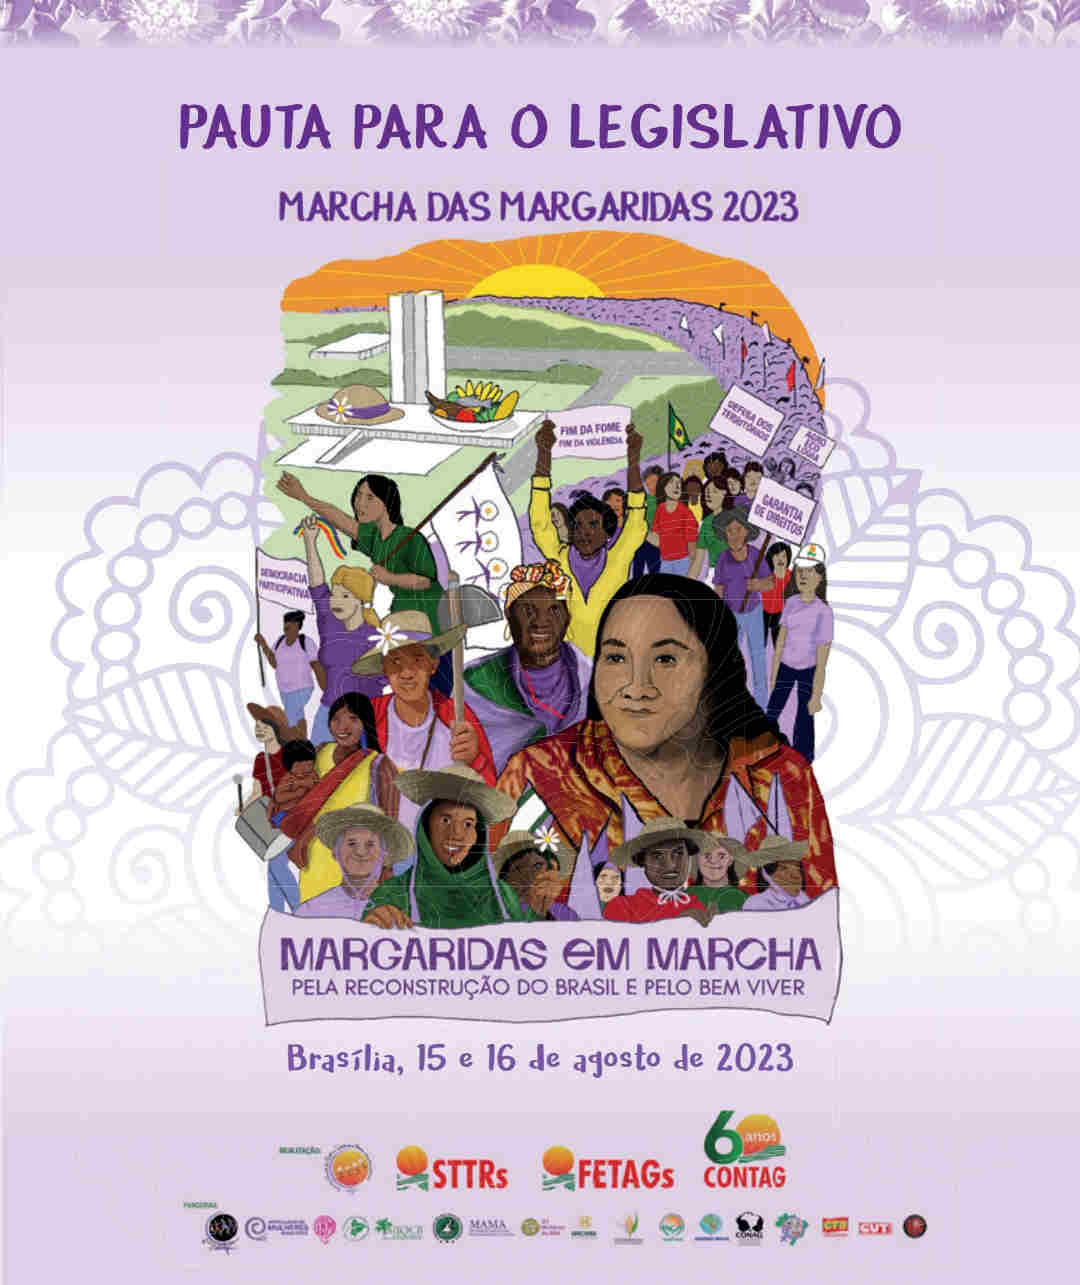 Marcha das Margaridas: Câmara deve criar na próxima semana GT para acompanhar pauta legislativa do movimento